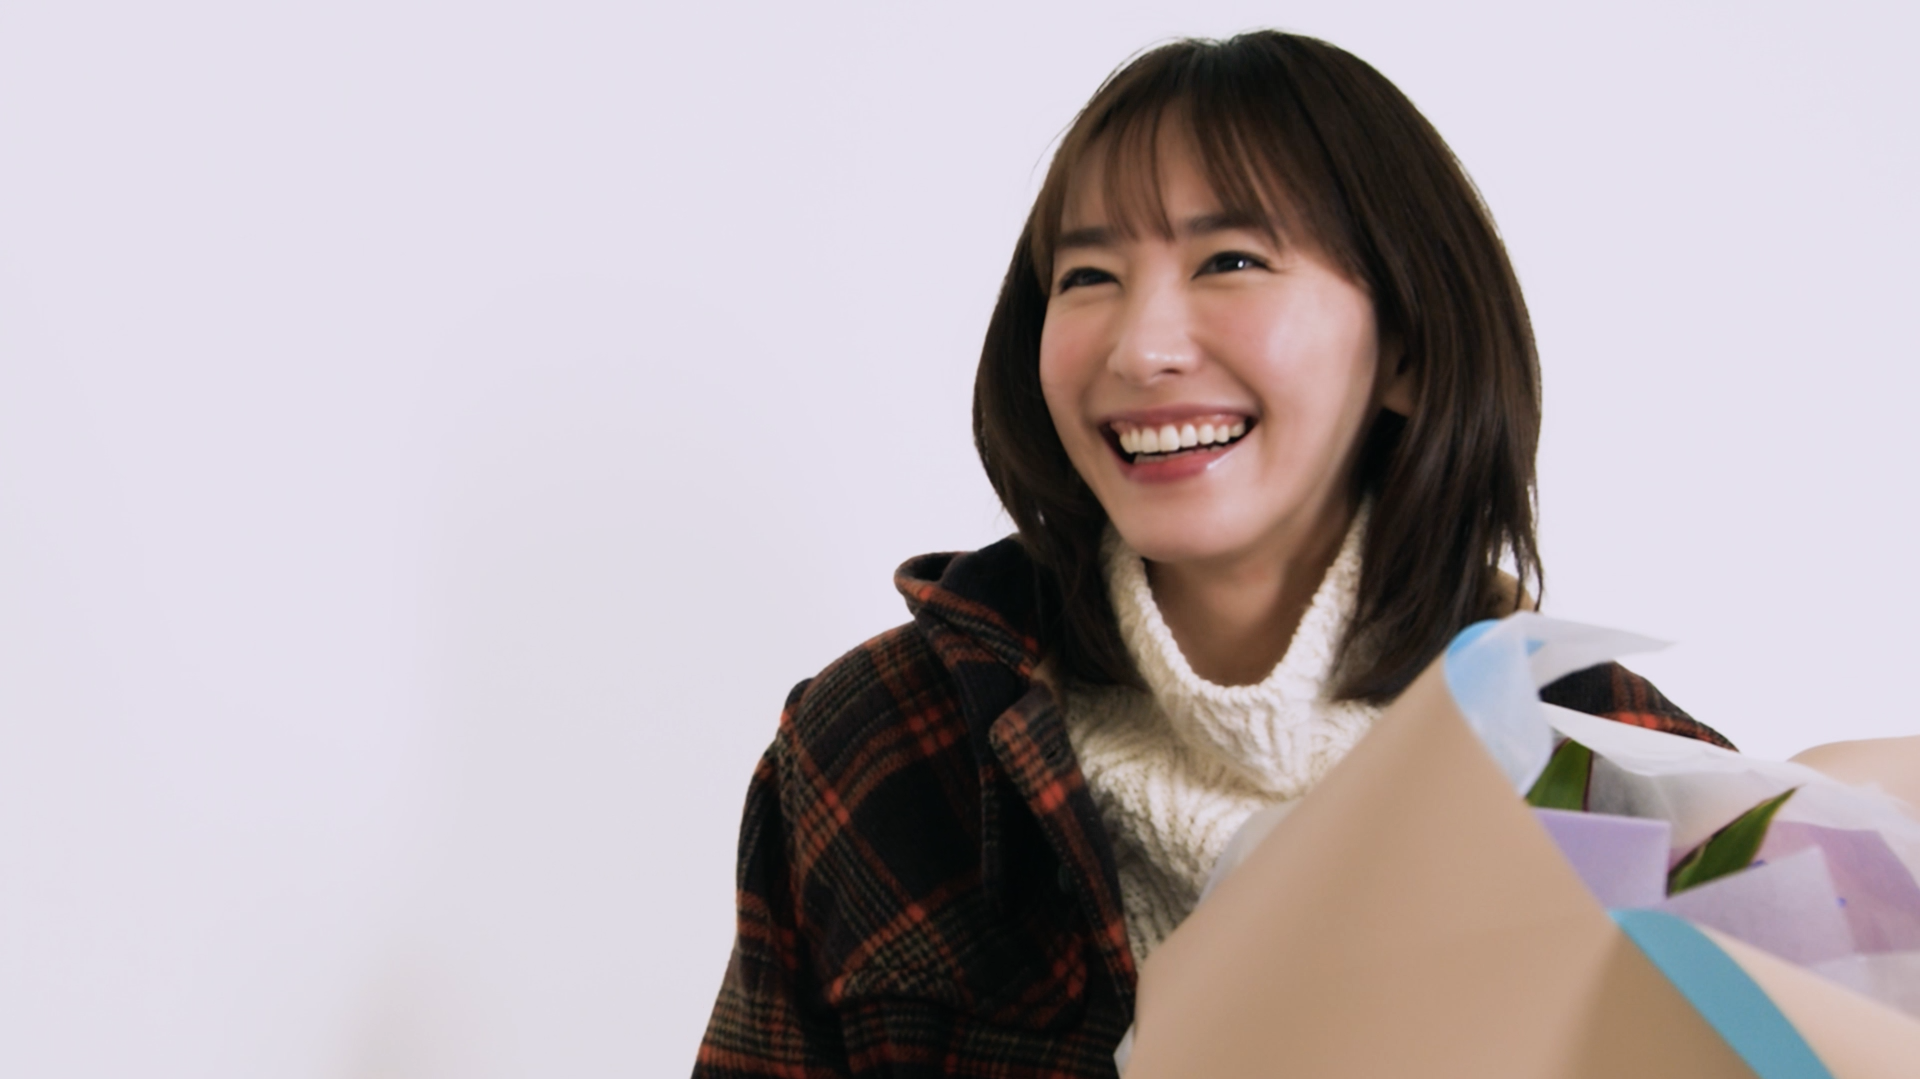 新垣結衣（あらがき・ゆい）チョコレート「メルティーキッス」CM女優,モデル